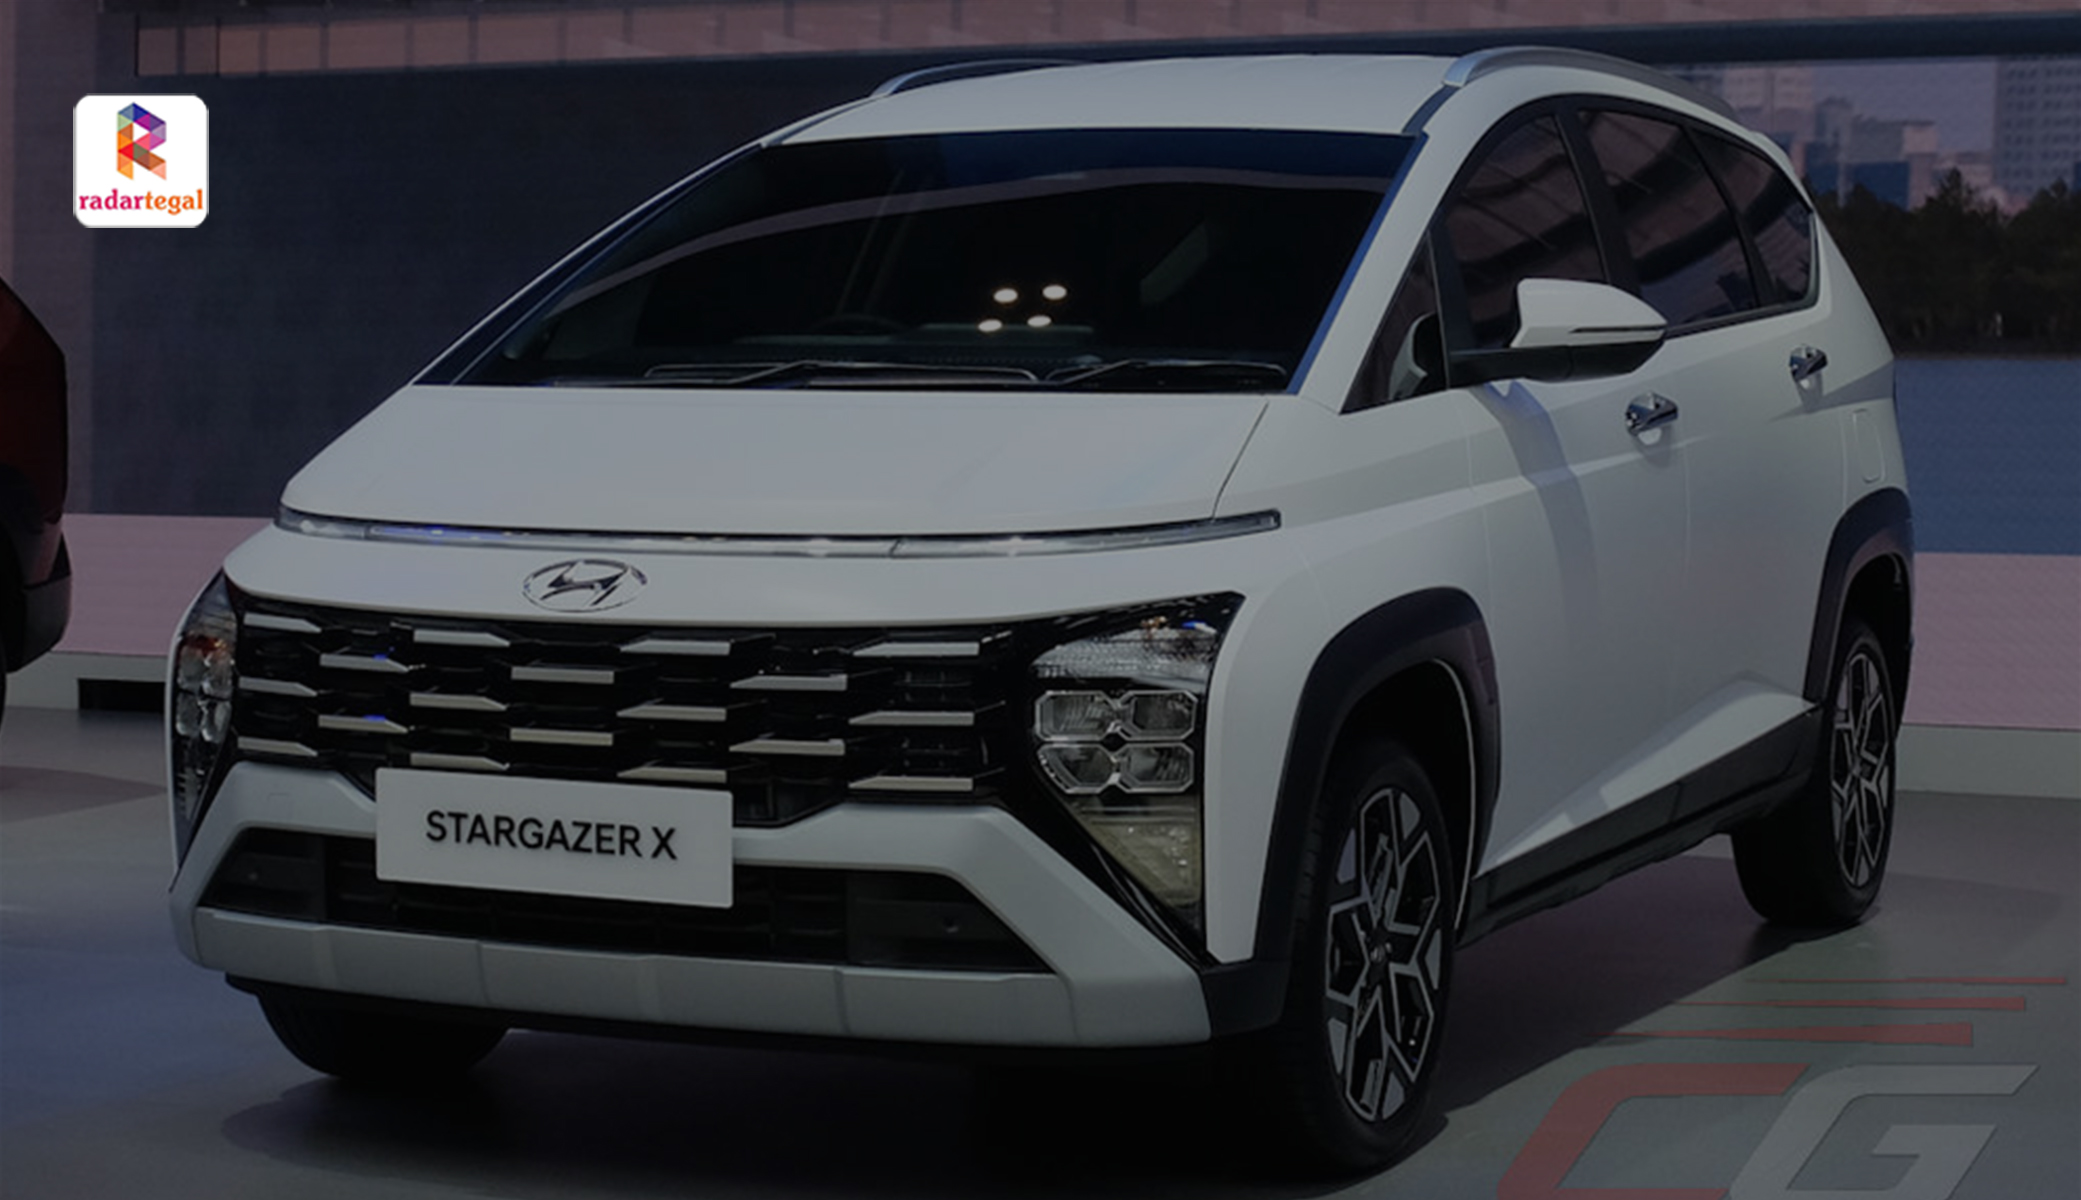 Hyundai Stargazer X Kini Ramai Diminati, Ini 5 Keunggulannya yang Bikin Pecinta Otomotif Jatuh Hati